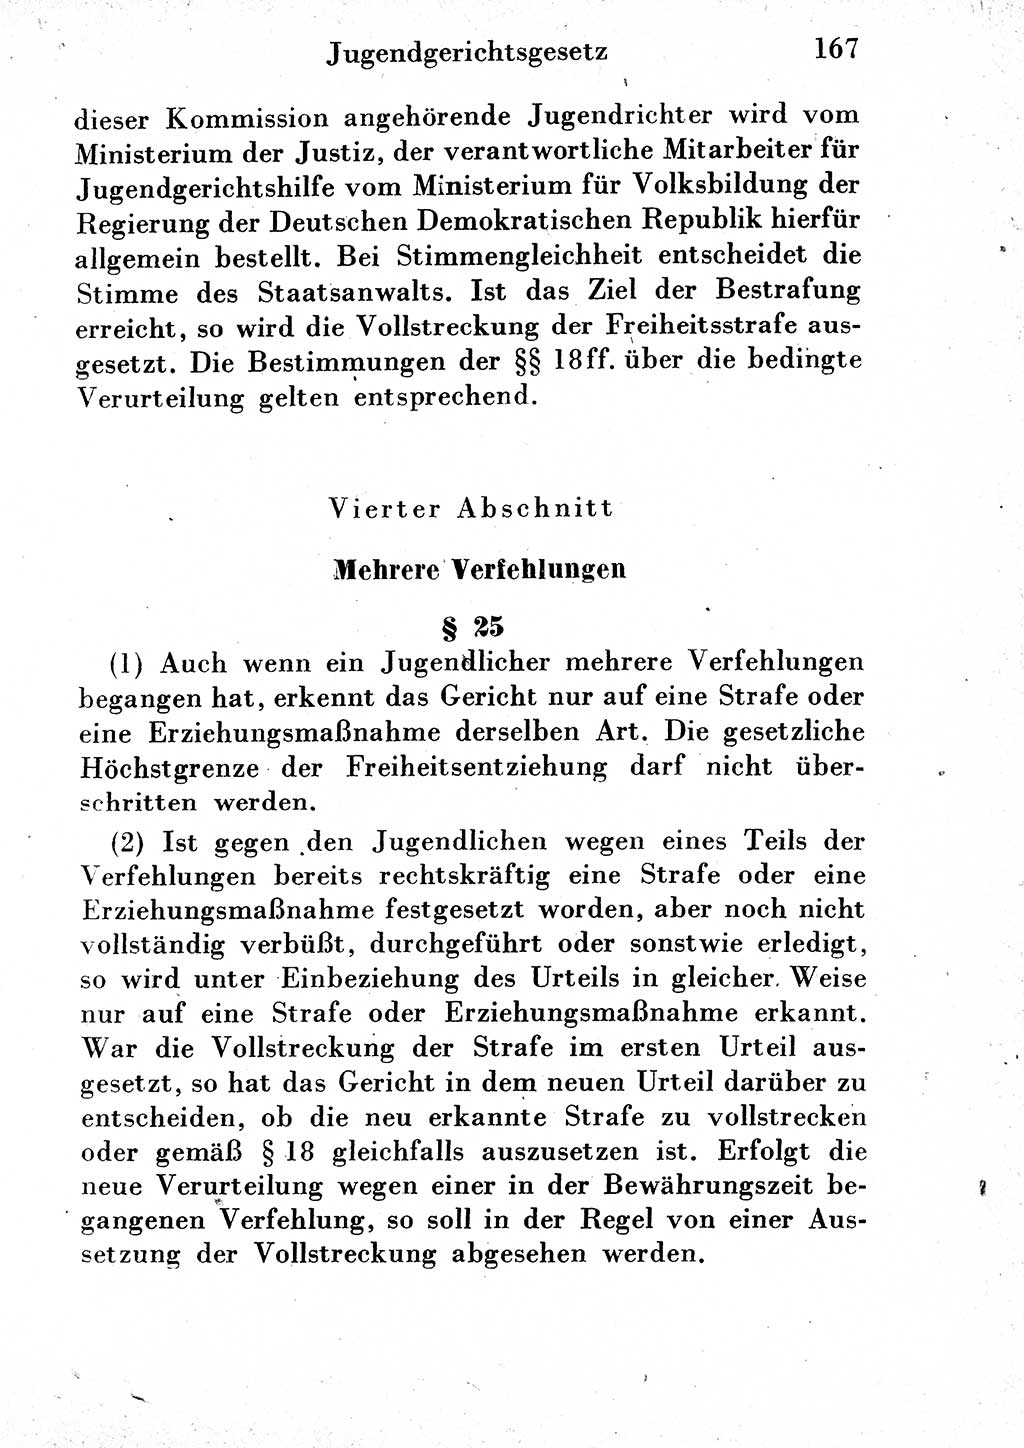 Strafgesetzbuch (StGB) und andere Strafgesetze [Deutsche Demokratische Republik (DDR)] 1954, Seite 167 (StGB Strafges. DDR 1954, S. 167)